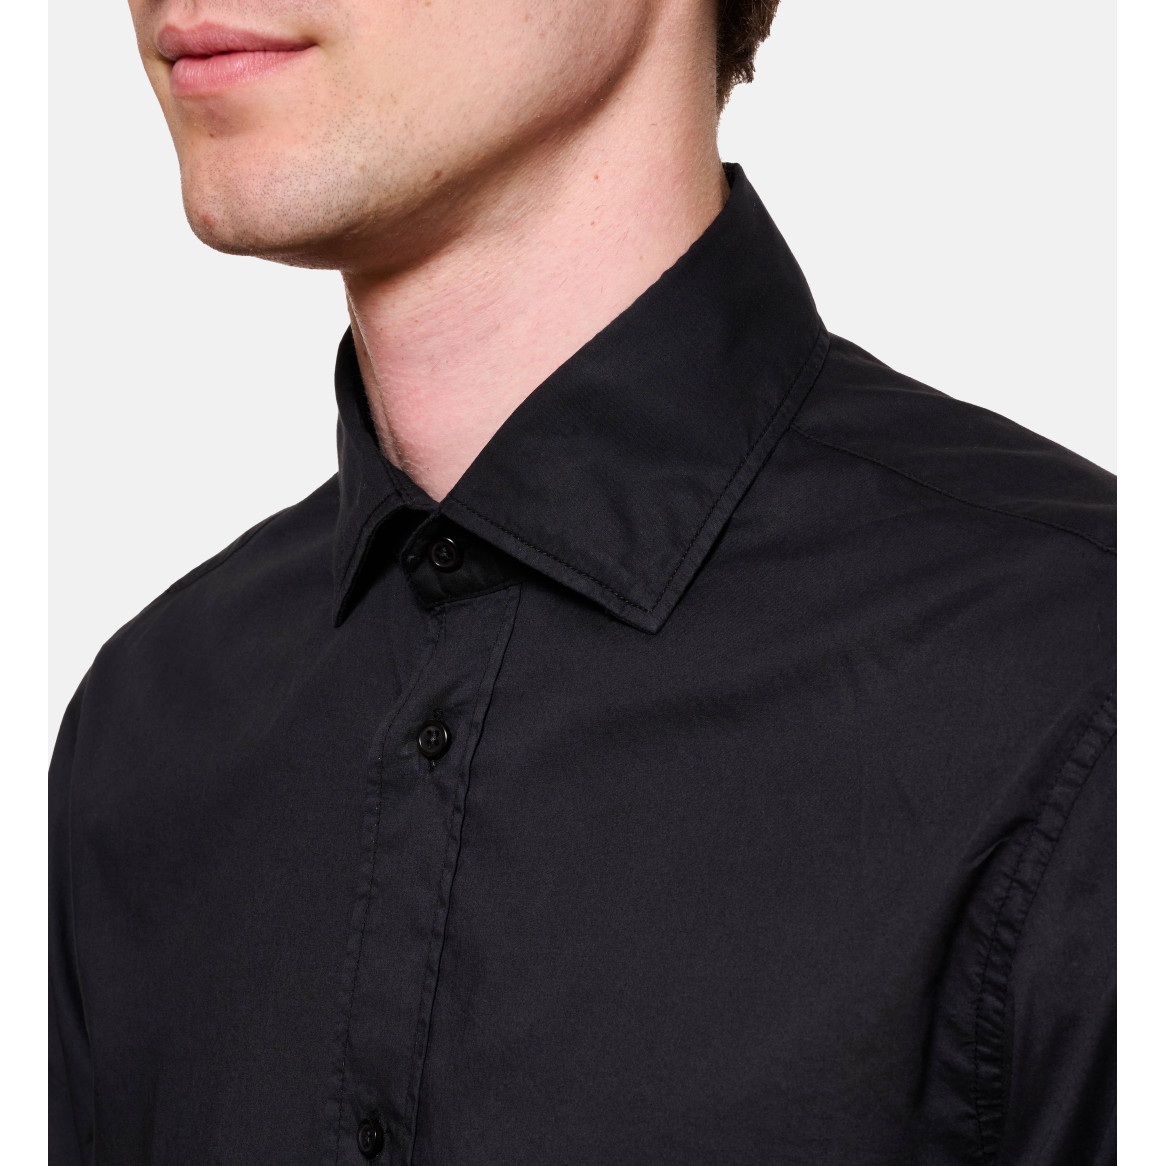 Chemise noir en voile de coton coupe droite